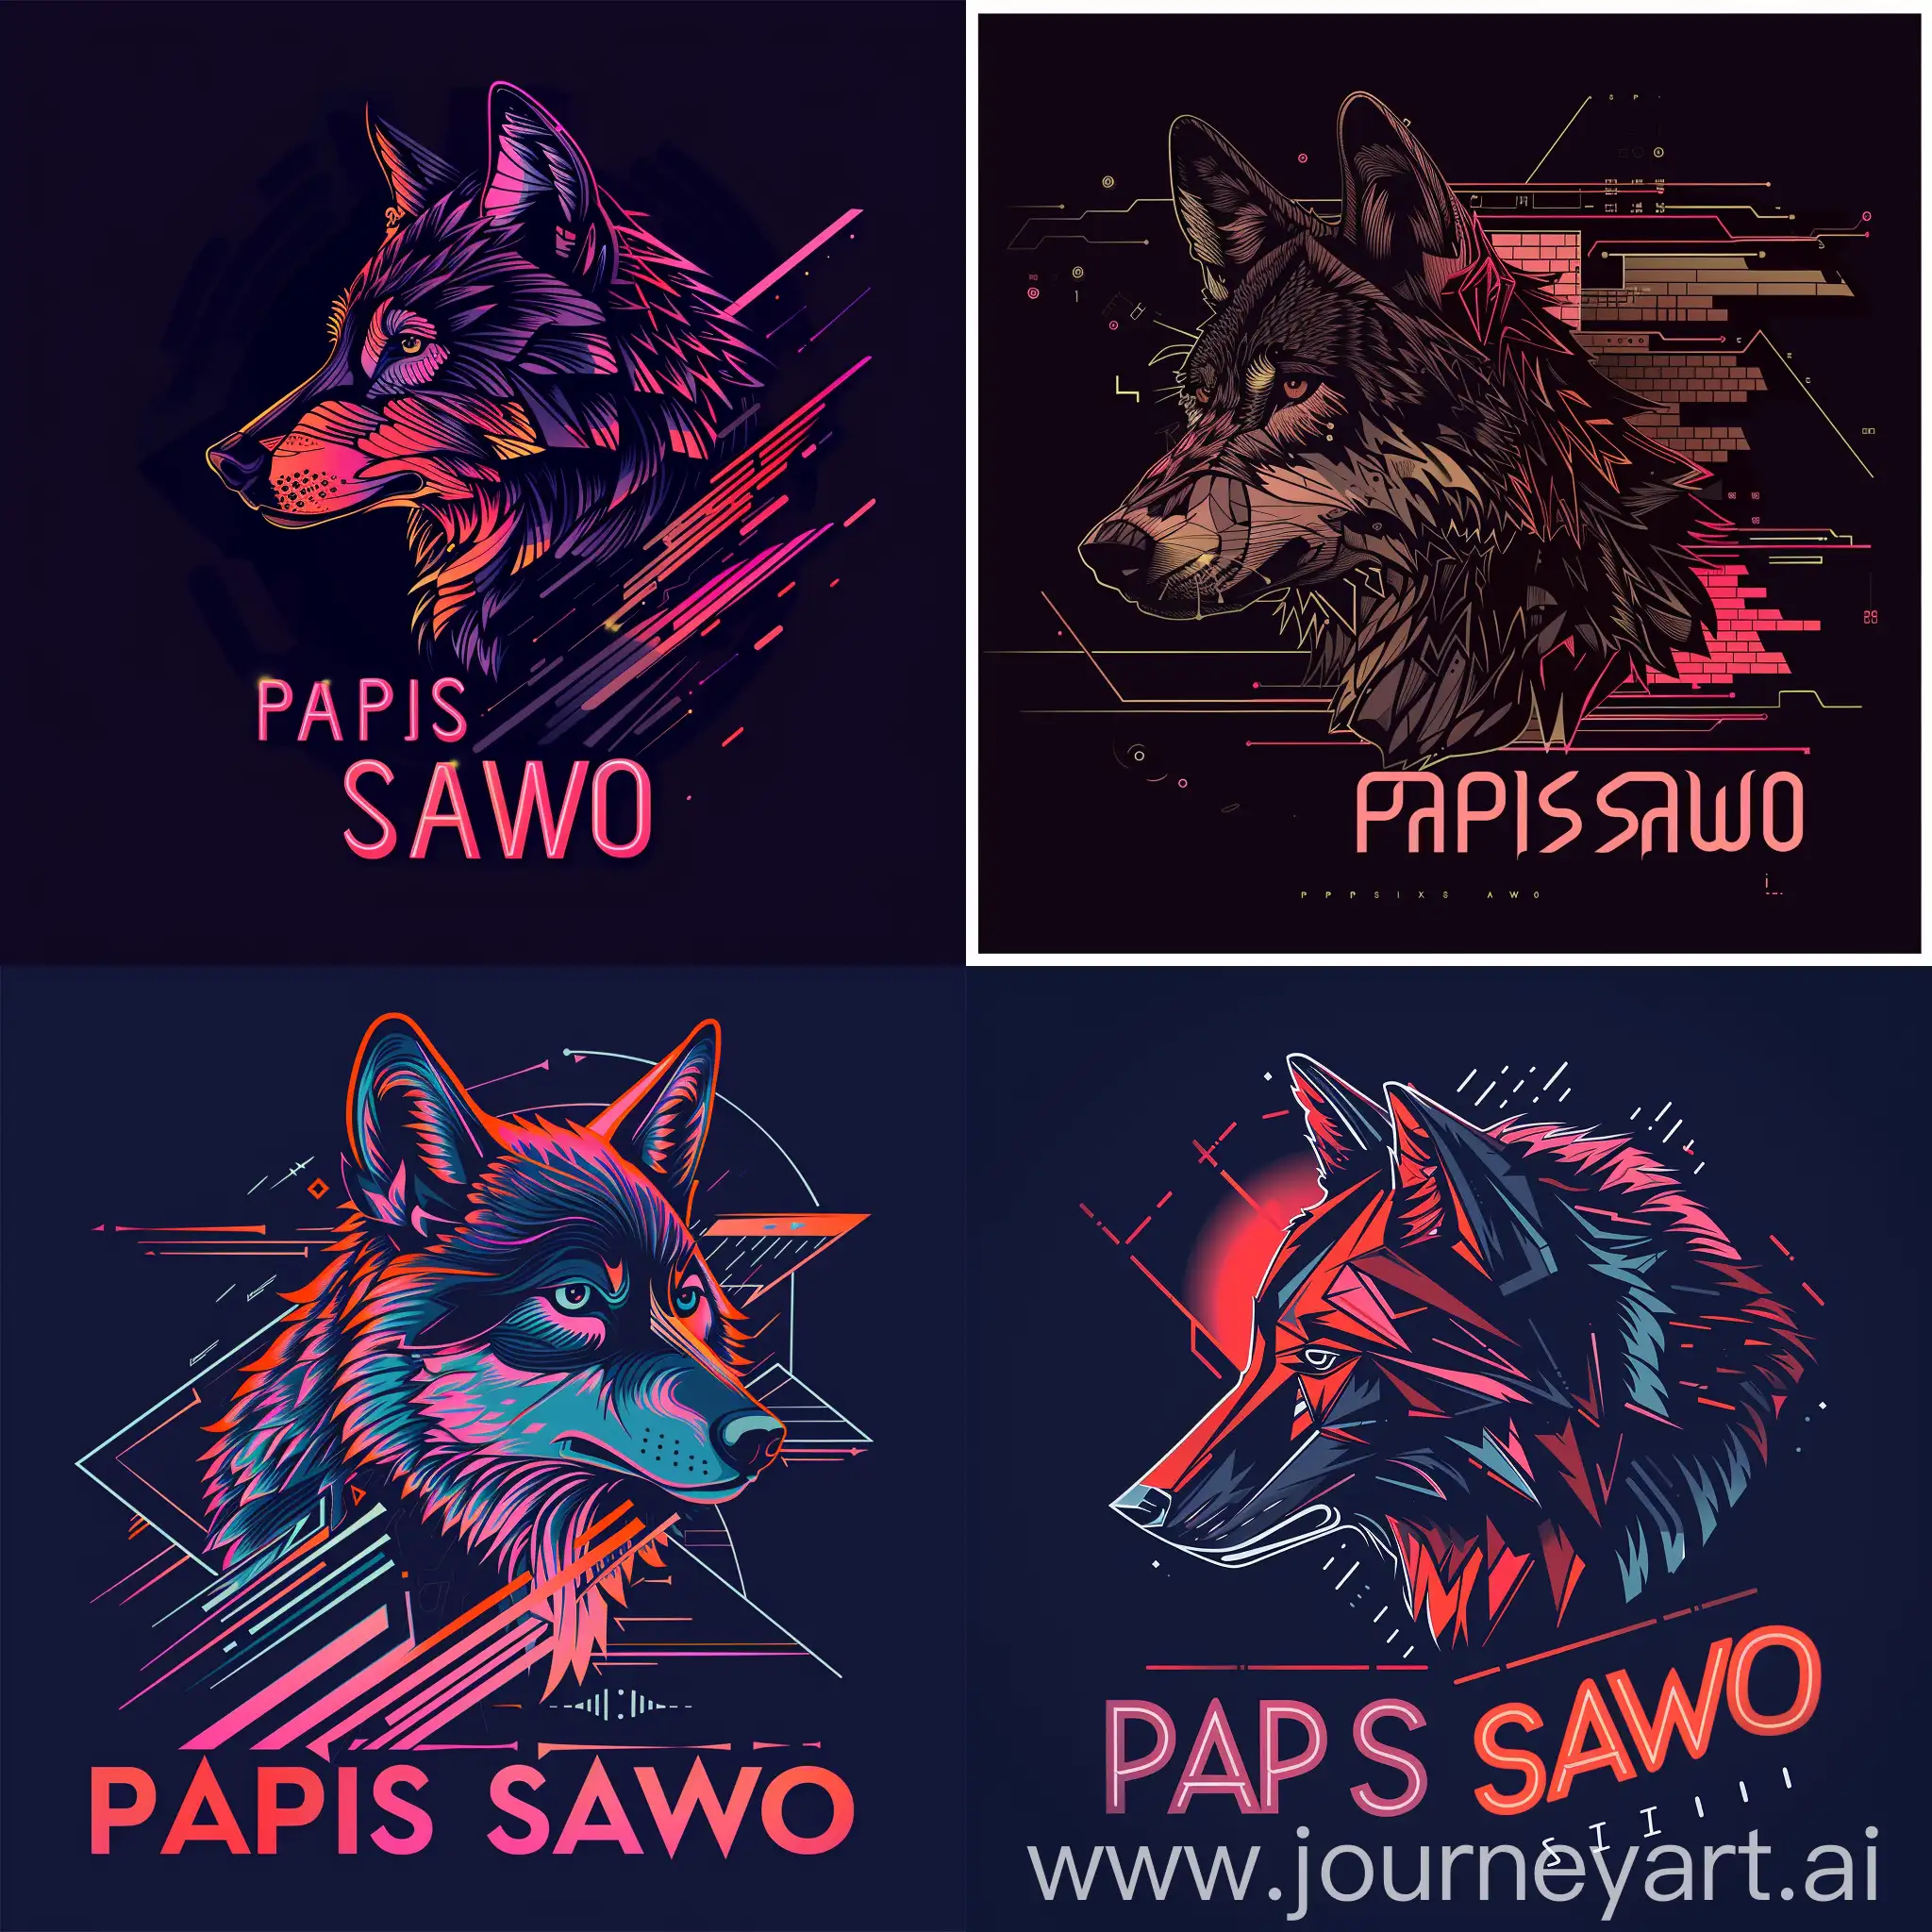 Логотип со словами "PAPIS SAWO", стилизованный волк в техно стиле, волк смотрит в сторону в стилизованном графическом виде с геометрическими формами и цифровыми элементами, чтобы подчеркнуть техно-стиль логотипа, неоновый шрифт для надписи "PAPIS SAWO", добавит эффектного контраста и привлечет внимание к логотипу, --s 100